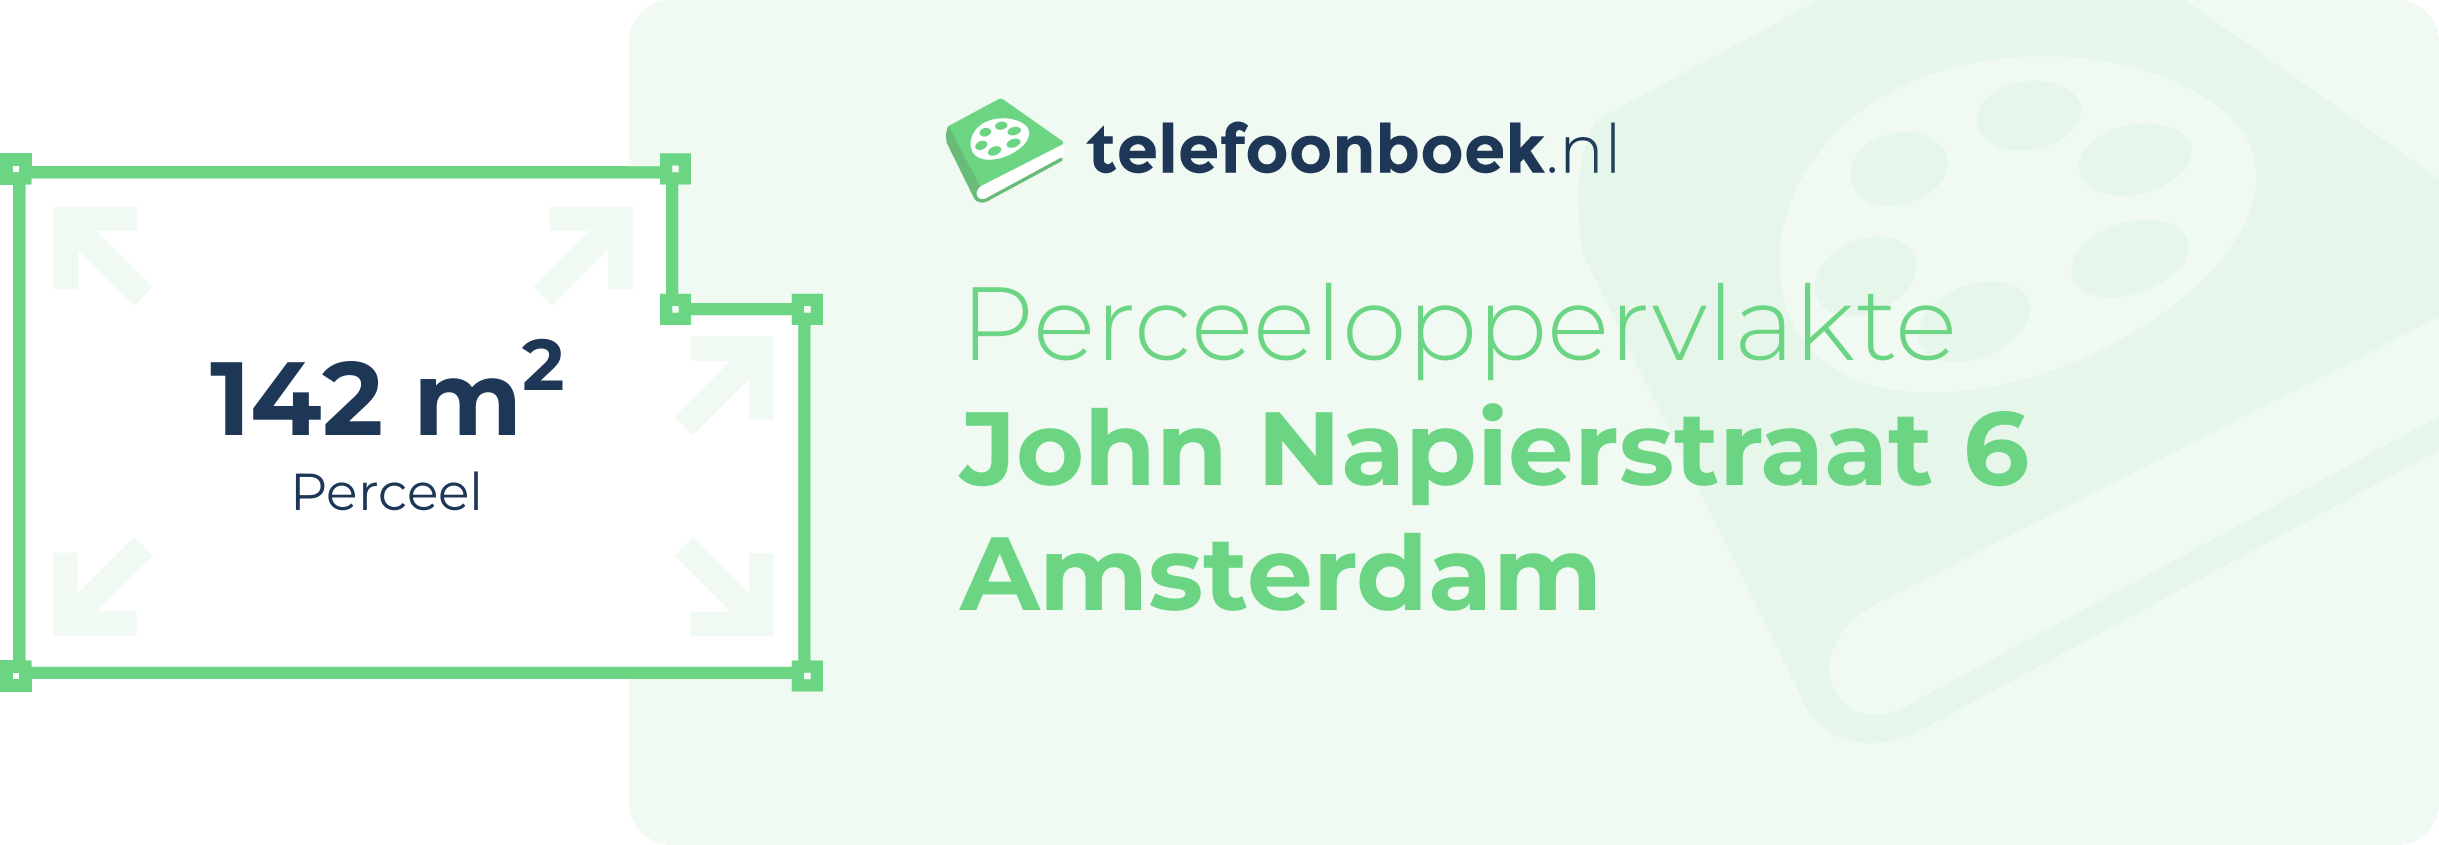 Perceeloppervlakte John Napierstraat 6 Amsterdam